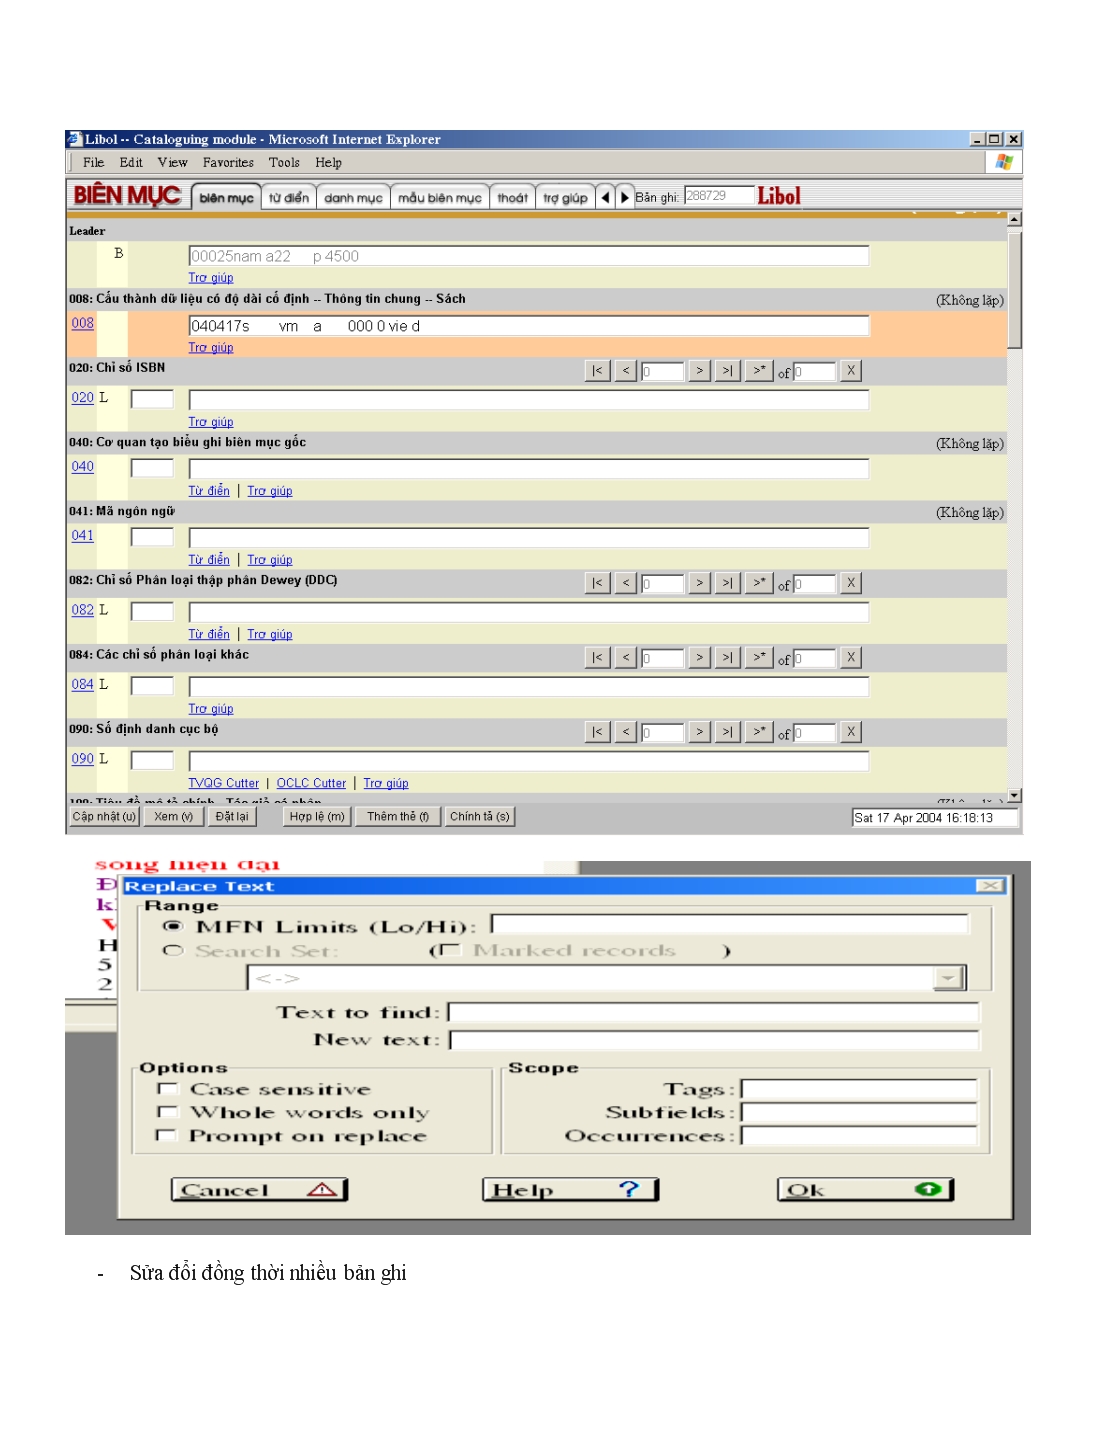 Yêu cầu chi tiết các phân hệ của phần mềm quản trị thư viện tích hợp libol trang 3